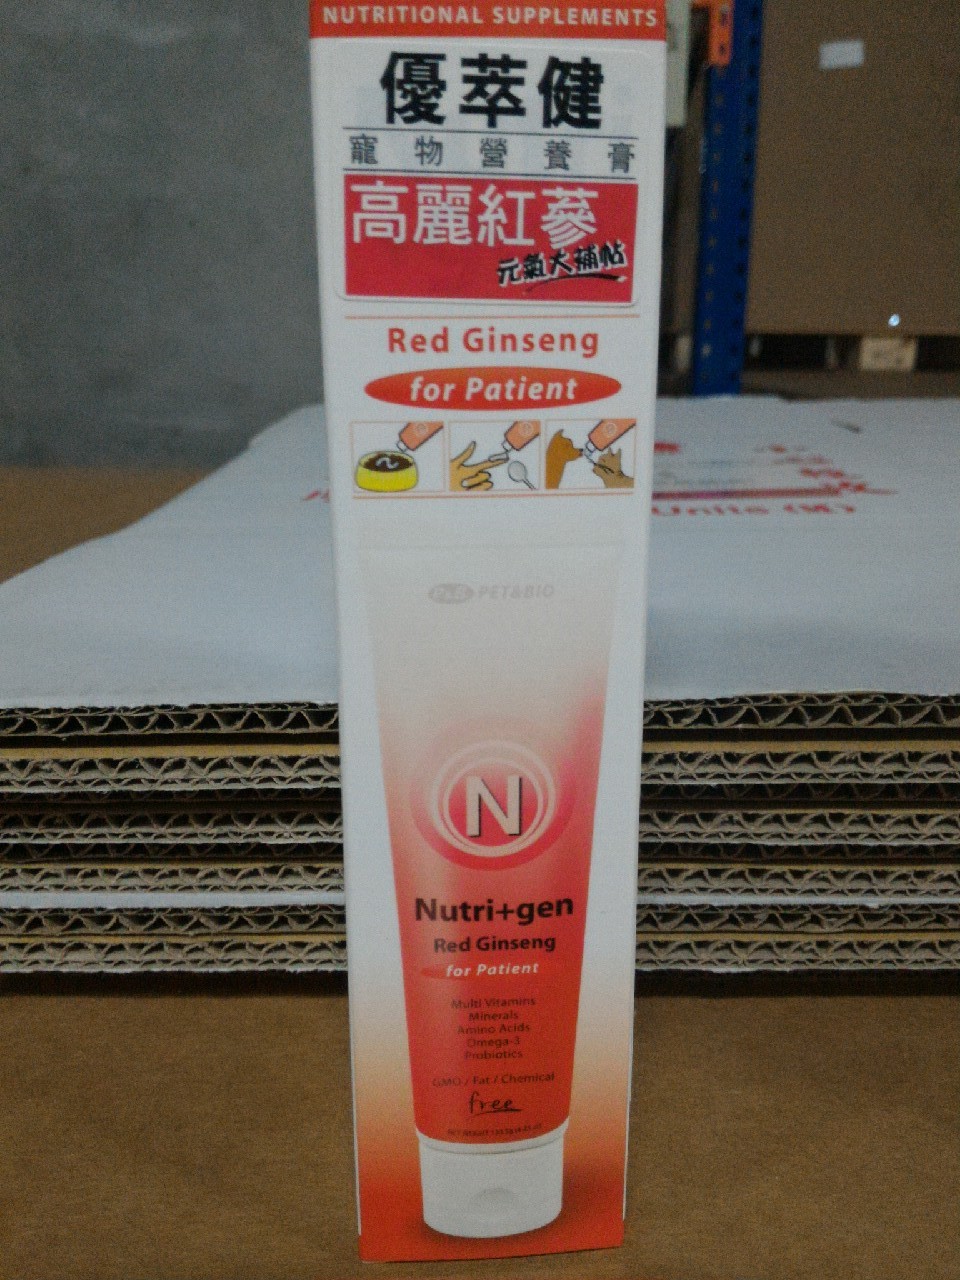 優萃健寵物營養膏-高麗紅蔘
Nutri+gen Red Ginseng